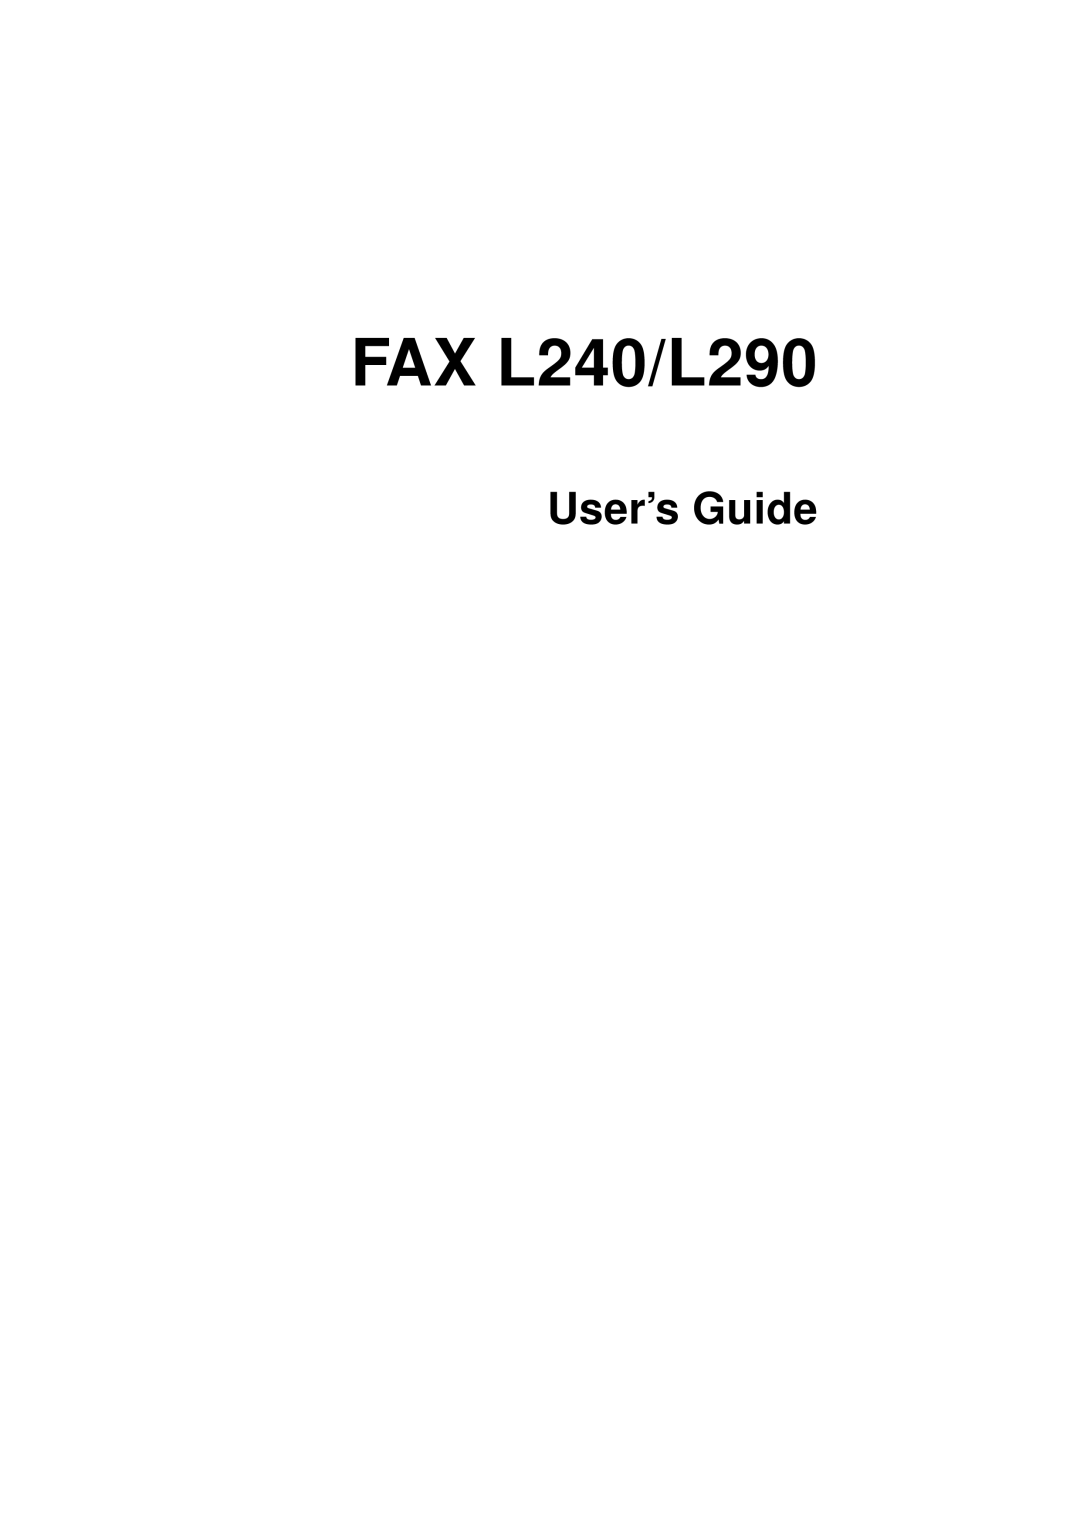 Canon manual FAX L240/L290, User’s Guide 